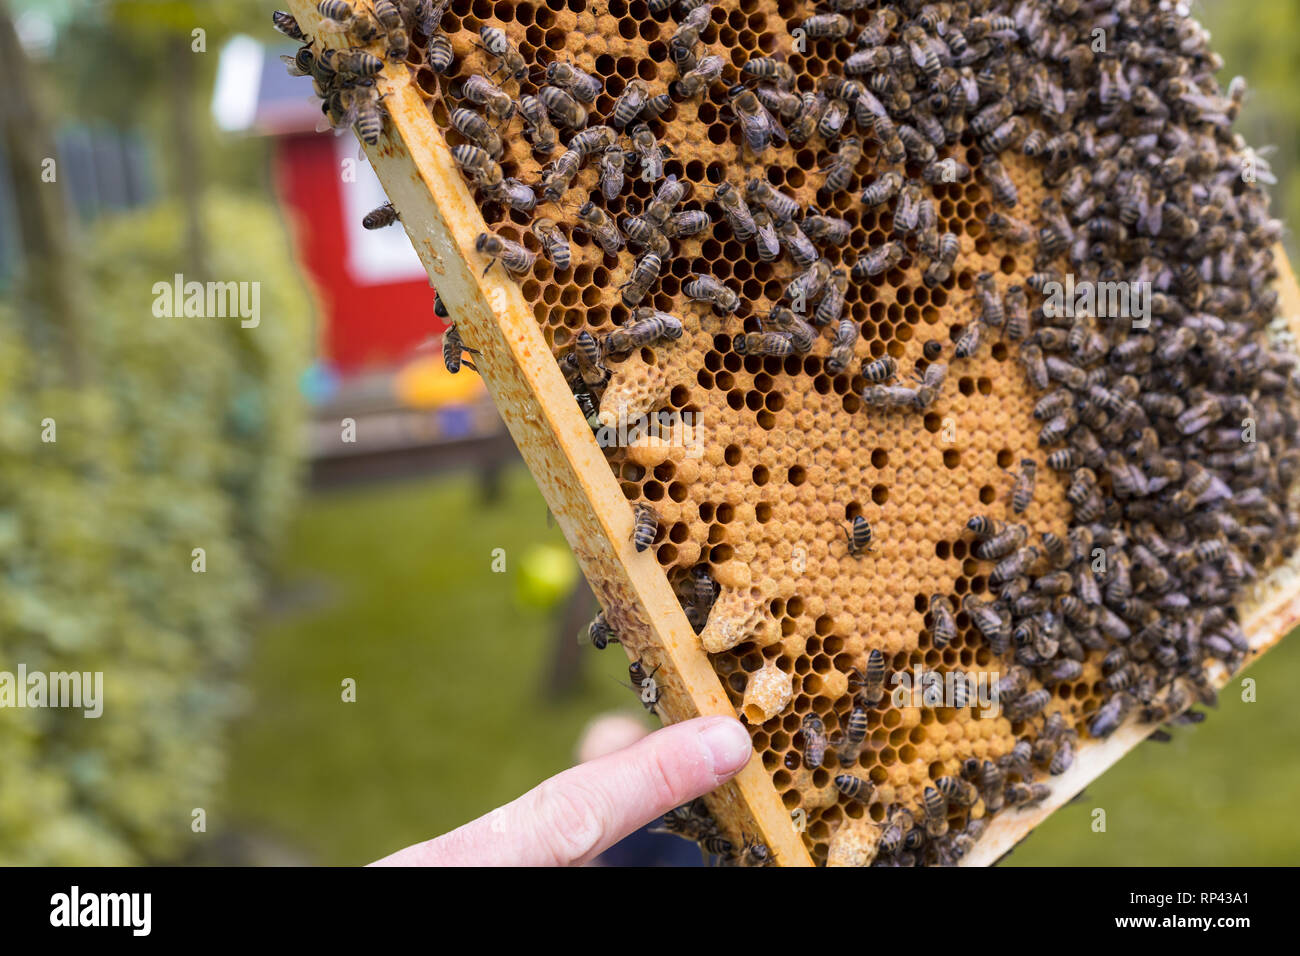 L'apiculteur vérifie un cadre d'une ruche. Il montre les cellules ouvertes et fermées d'un nid d'abeilles d'élevage et la fétuque. Le doigt pointe vers une cellule royale ouverte Banque D'Images